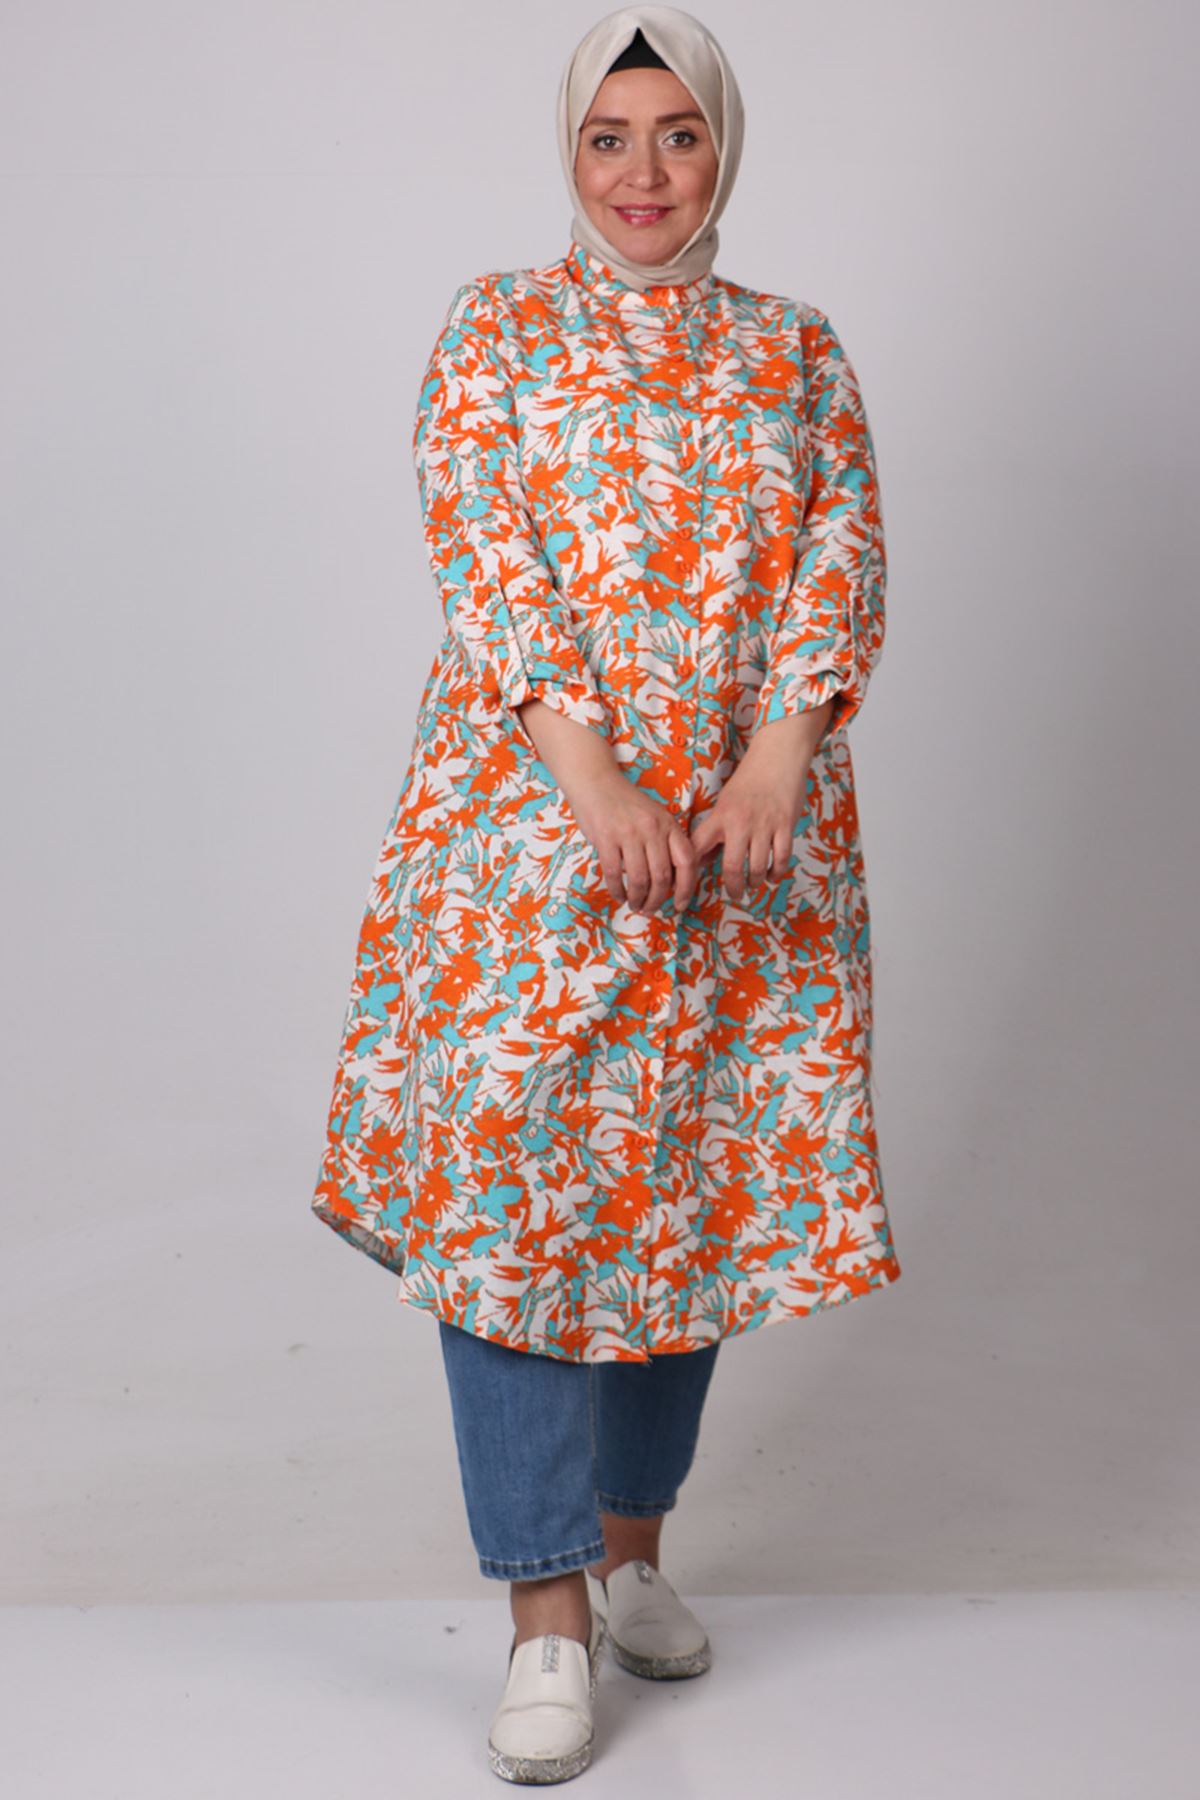 38074 Large Size Buttoned Patterned Linen Shirt -Leaf Pattern Orange